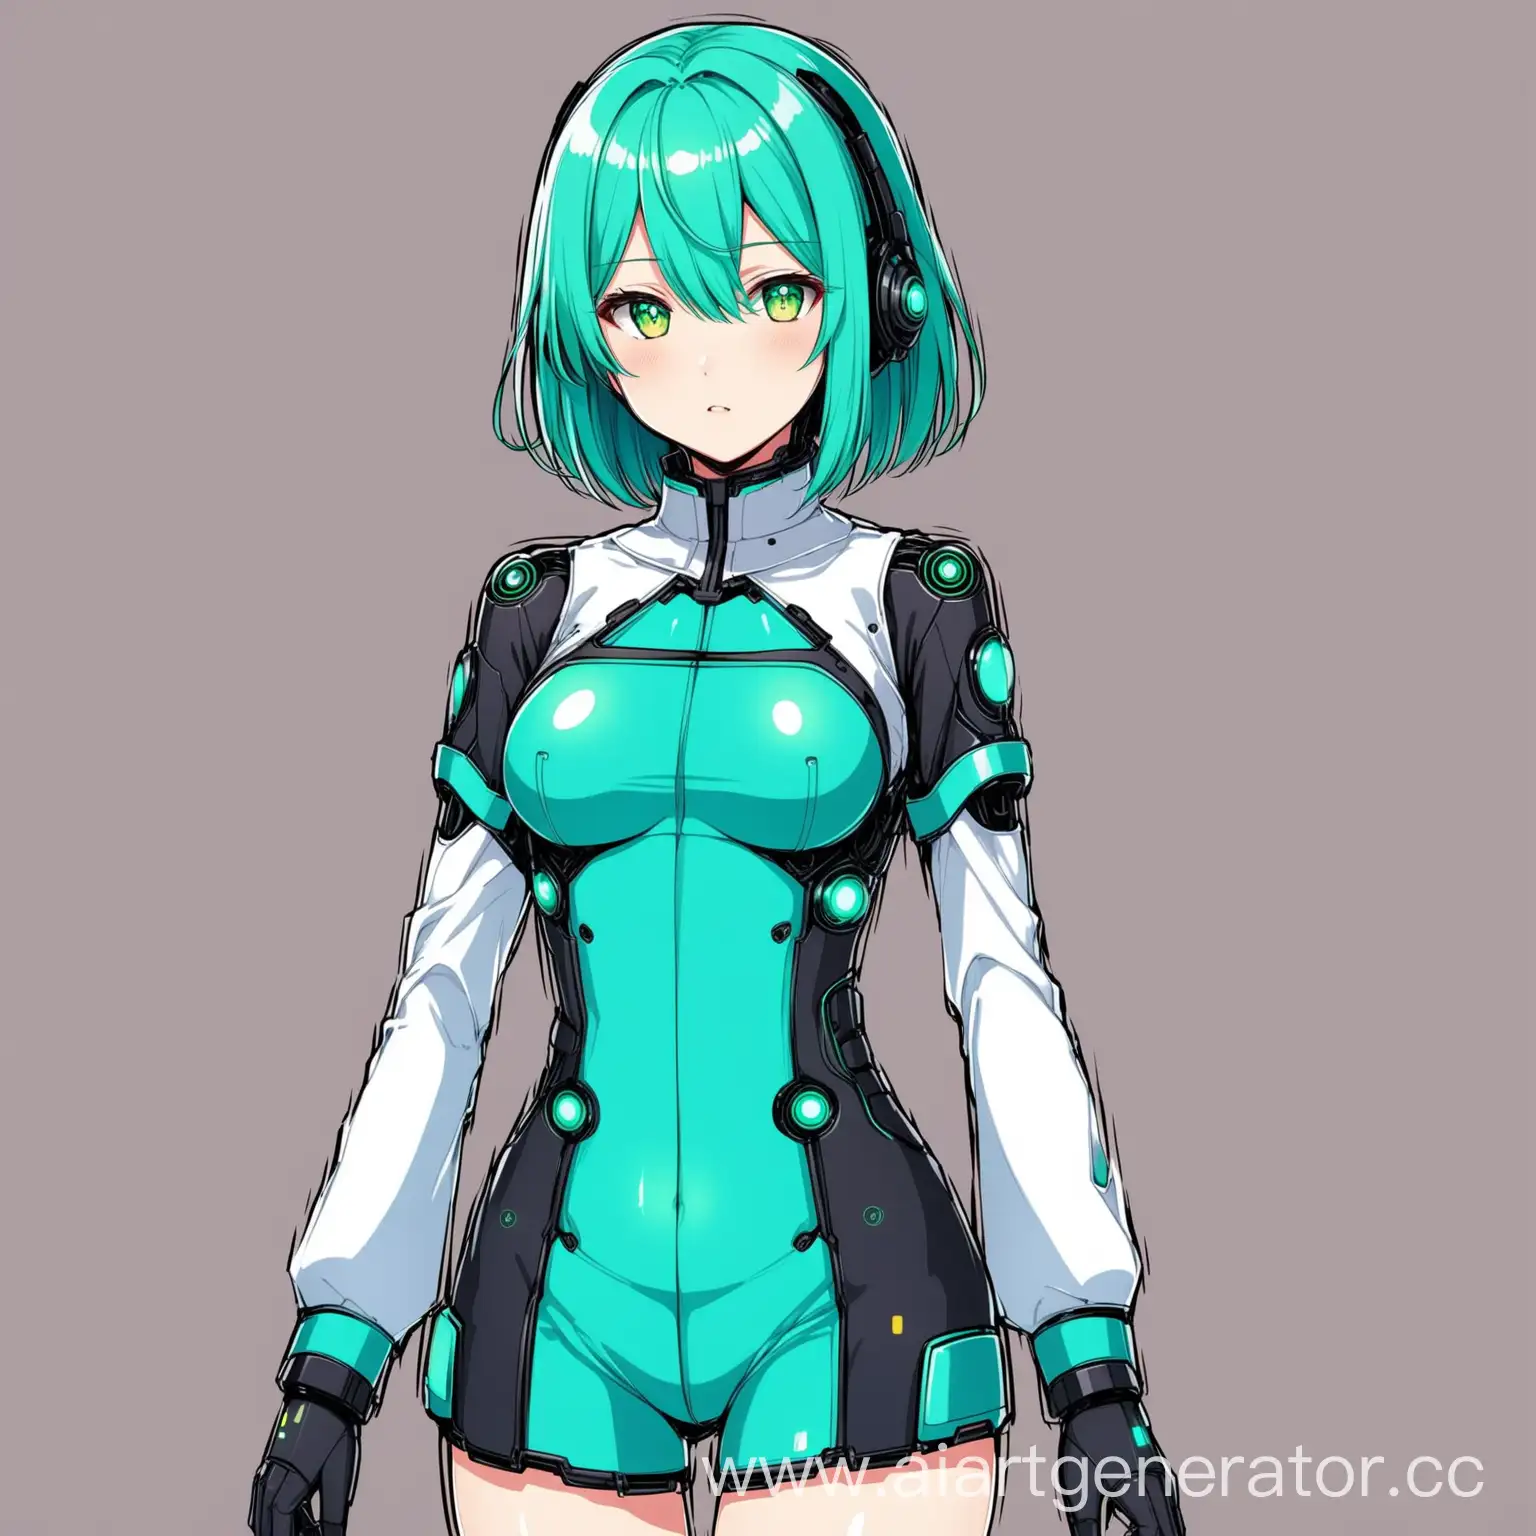 Futuristic-Anime-Girl-in-Stylish-Android-Attire